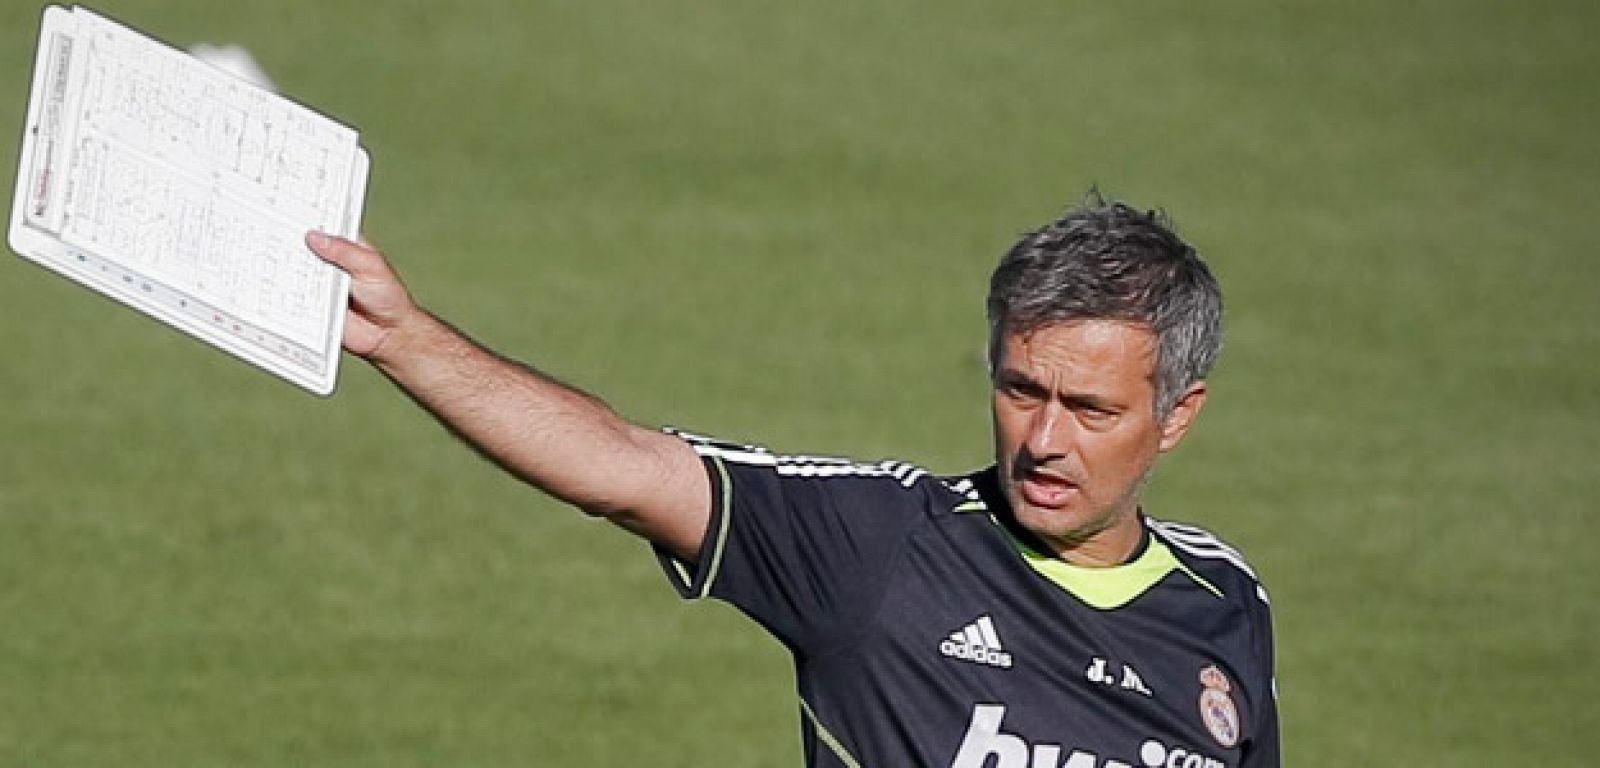 La llegada de Mourinho a la liga española ha hecho que la media de edad de los técnicos baje